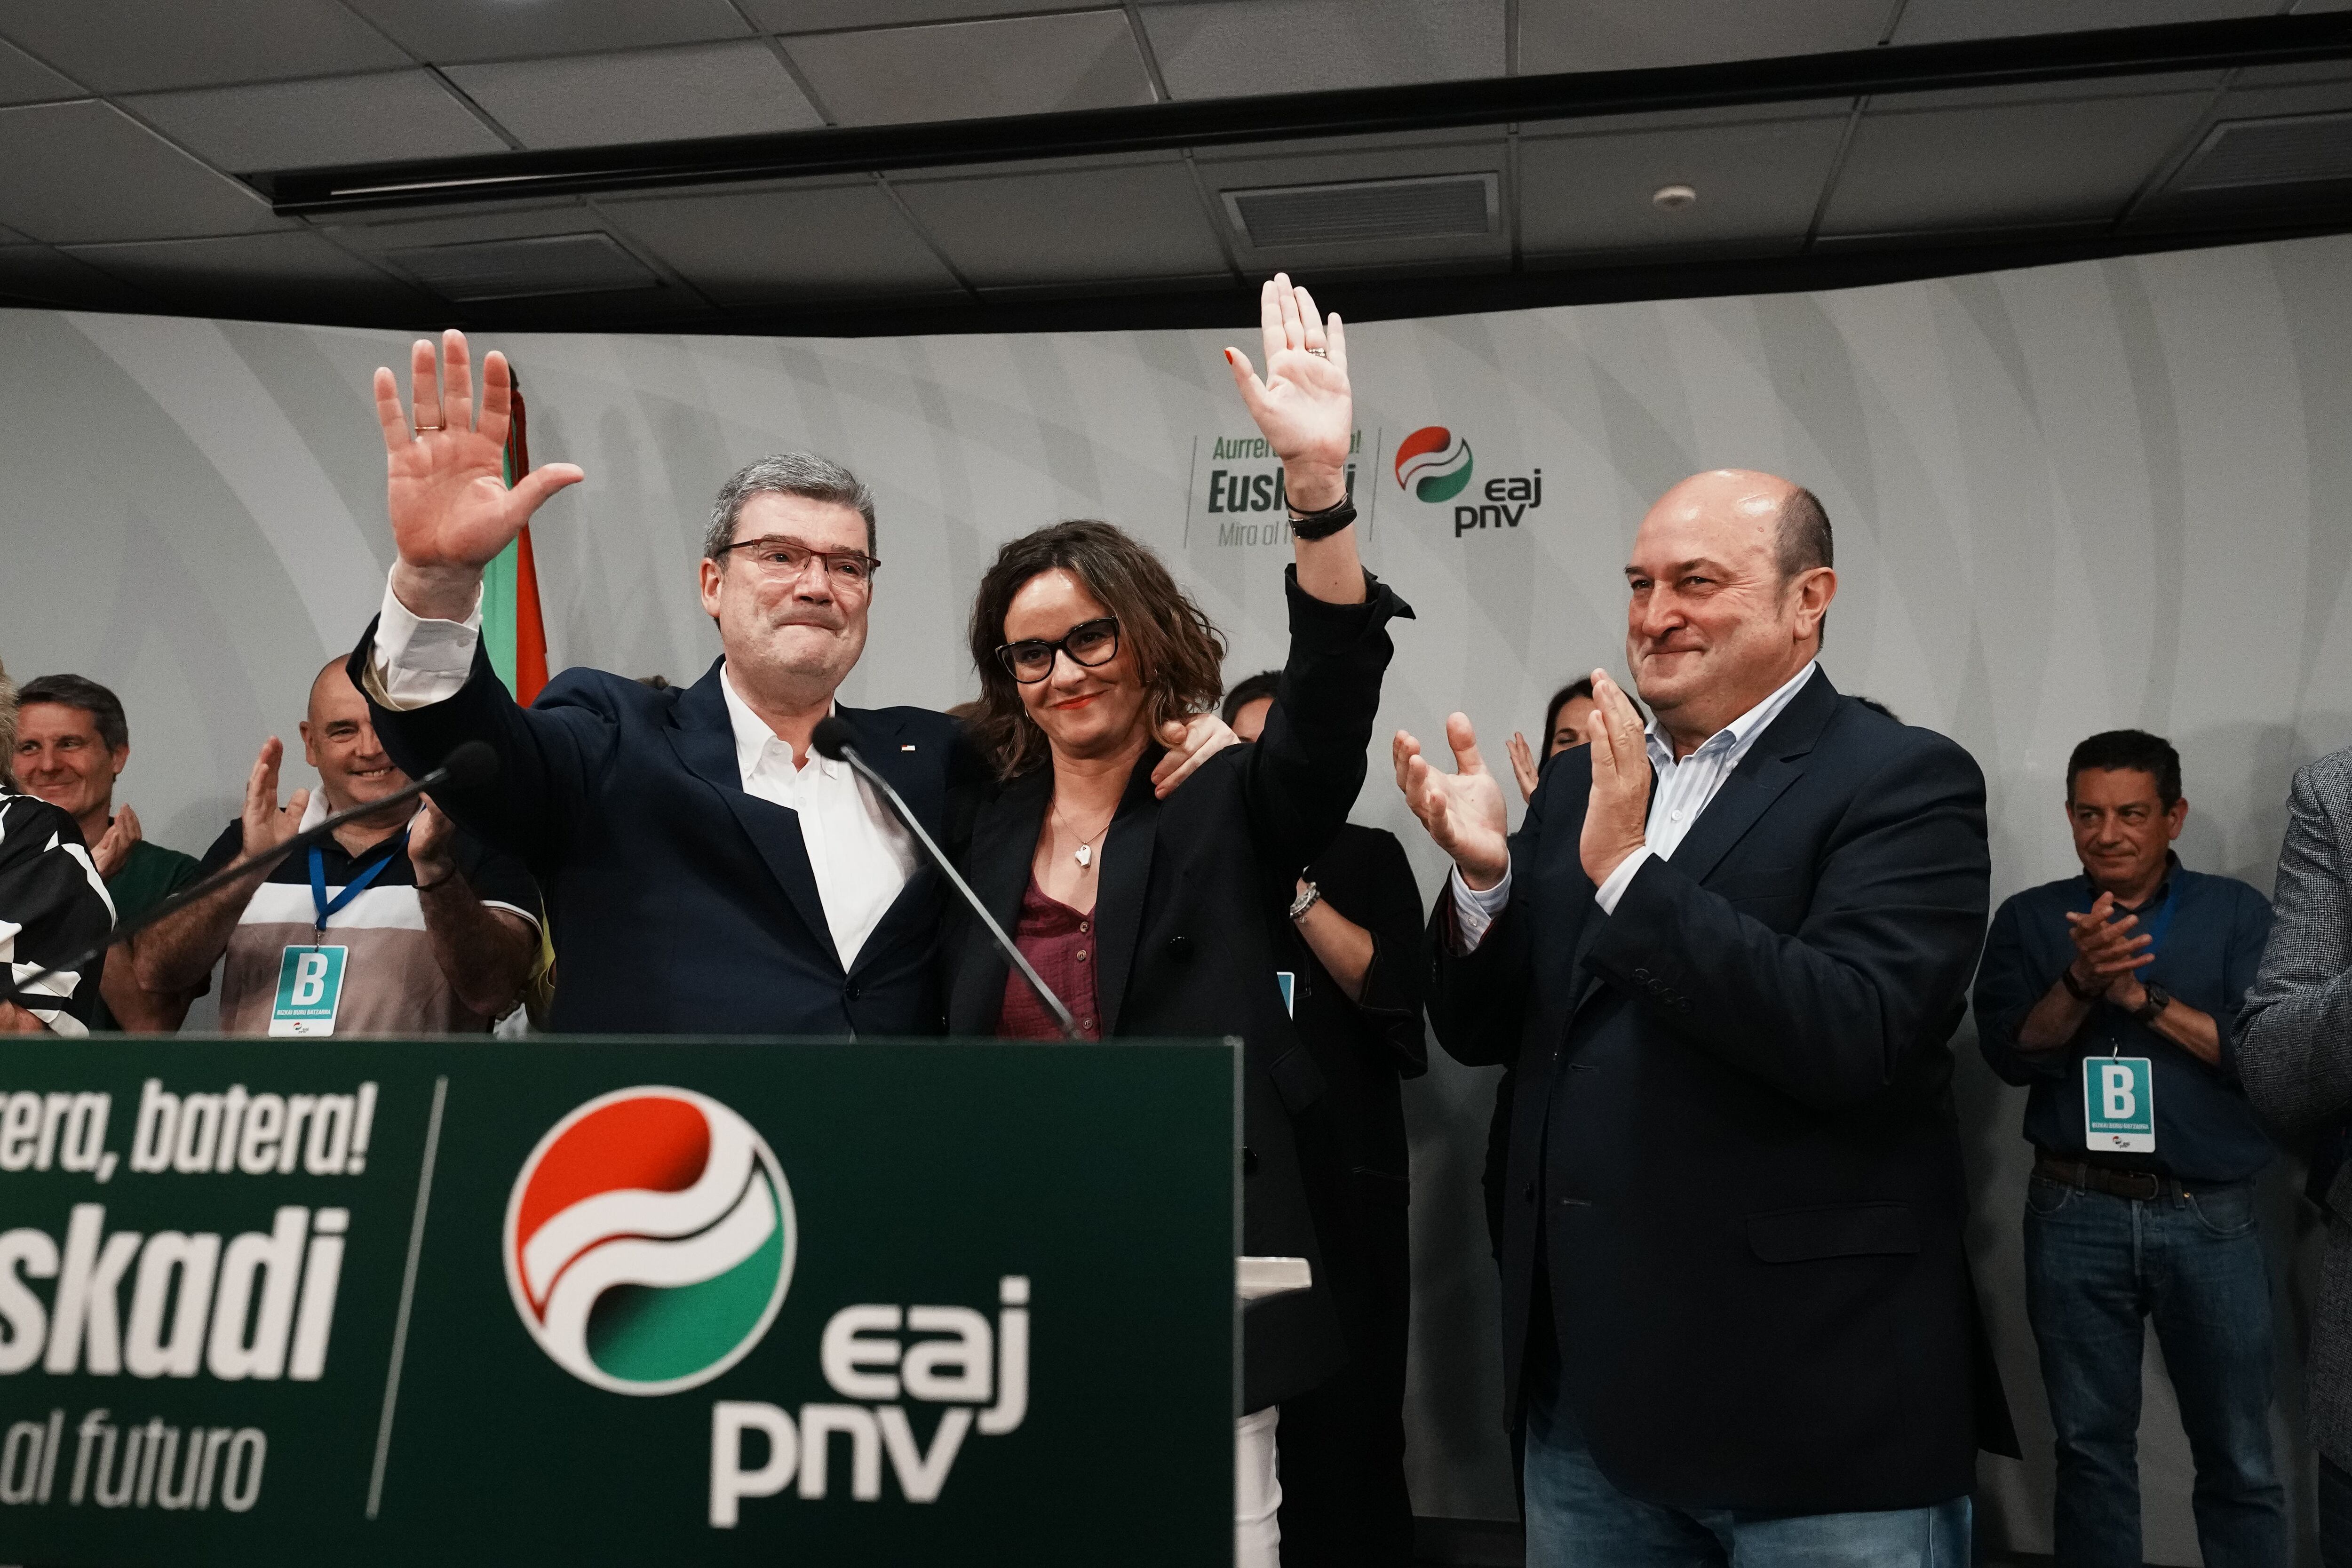 Desde la izquierda, el alcalde de Bilbao y candidato a la reelección por el PNV, Juan María Aburto; la candidata de PNV a diputada general de Bizkaia, Elixabete Etxanob, y el presidente del partido, Andoni Ortuzar, saludan durante el seguimiento de la jornada electoral.